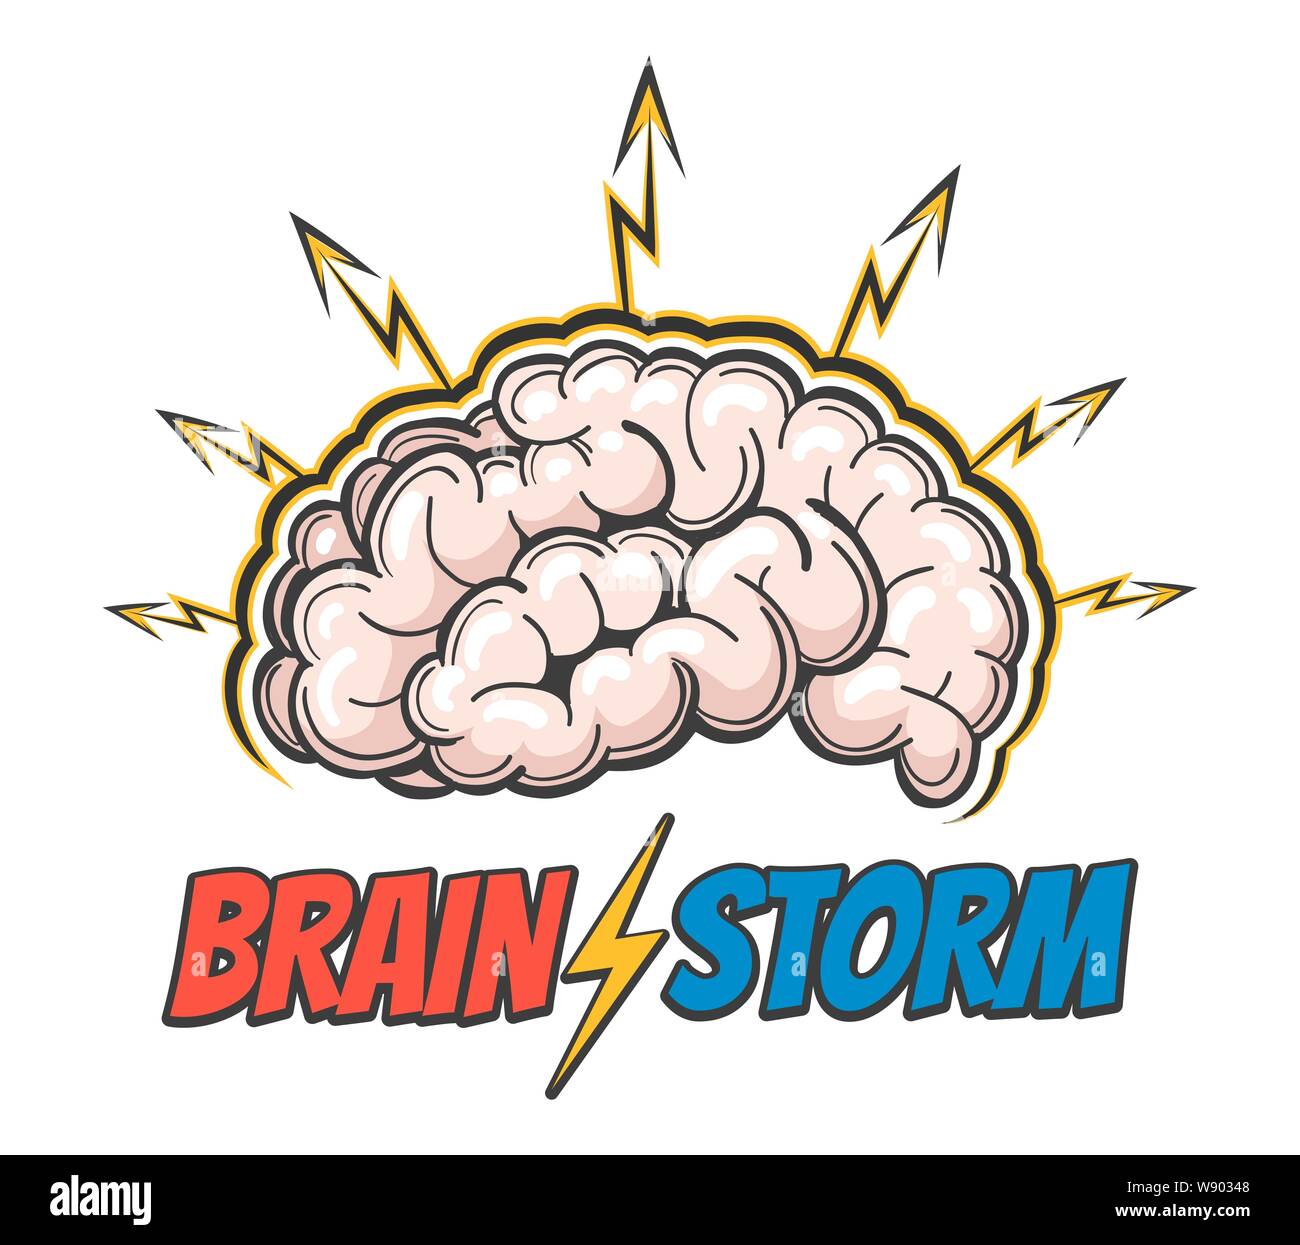 Disegnata a mano emblema del cervello umano con i fulmini e la formulazione di Barin tempesta. Buona idea, attività cerebrale, Insight. Illustrazione Vettoriale Illustrazione Vettoriale